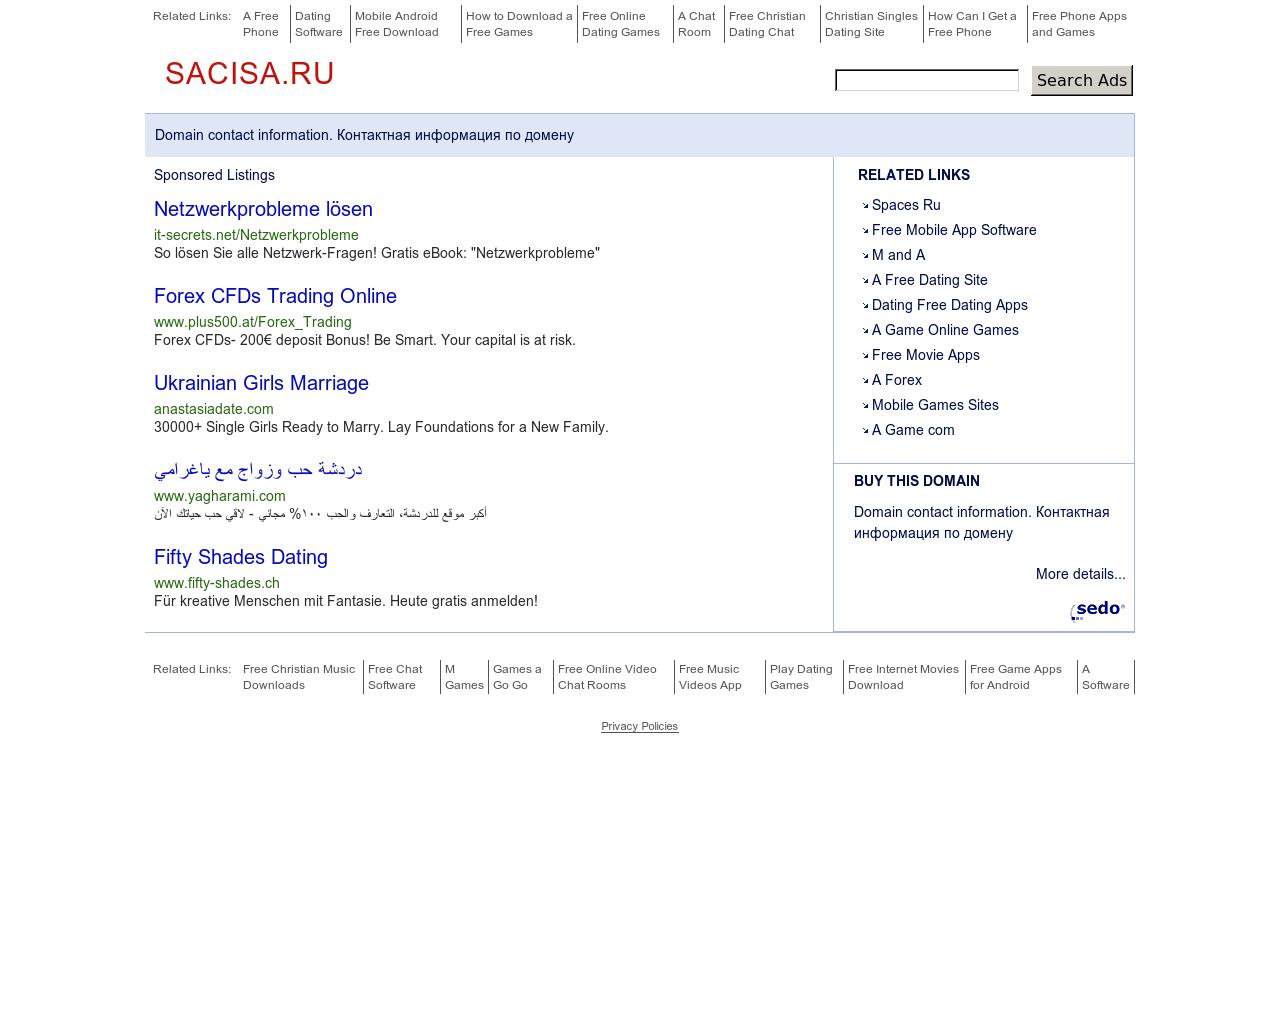 Изображение сайта sacisa.ru в разрешении 1280x1024